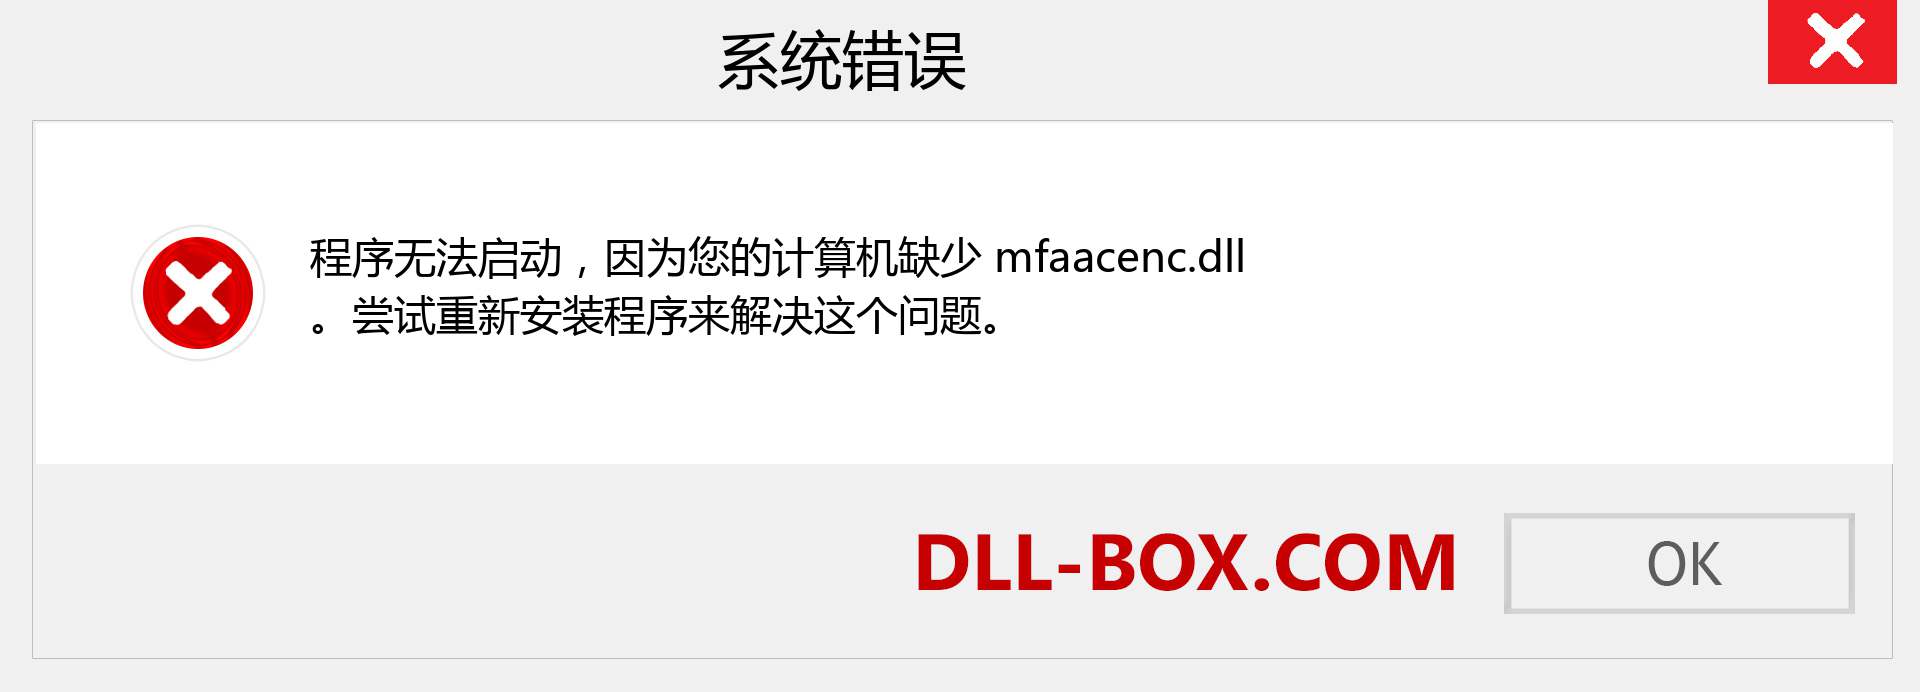 mfaacenc.dll 文件丢失？。 适用于 Windows 7、8、10 的下载 - 修复 Windows、照片、图像上的 mfaacenc dll 丢失错误